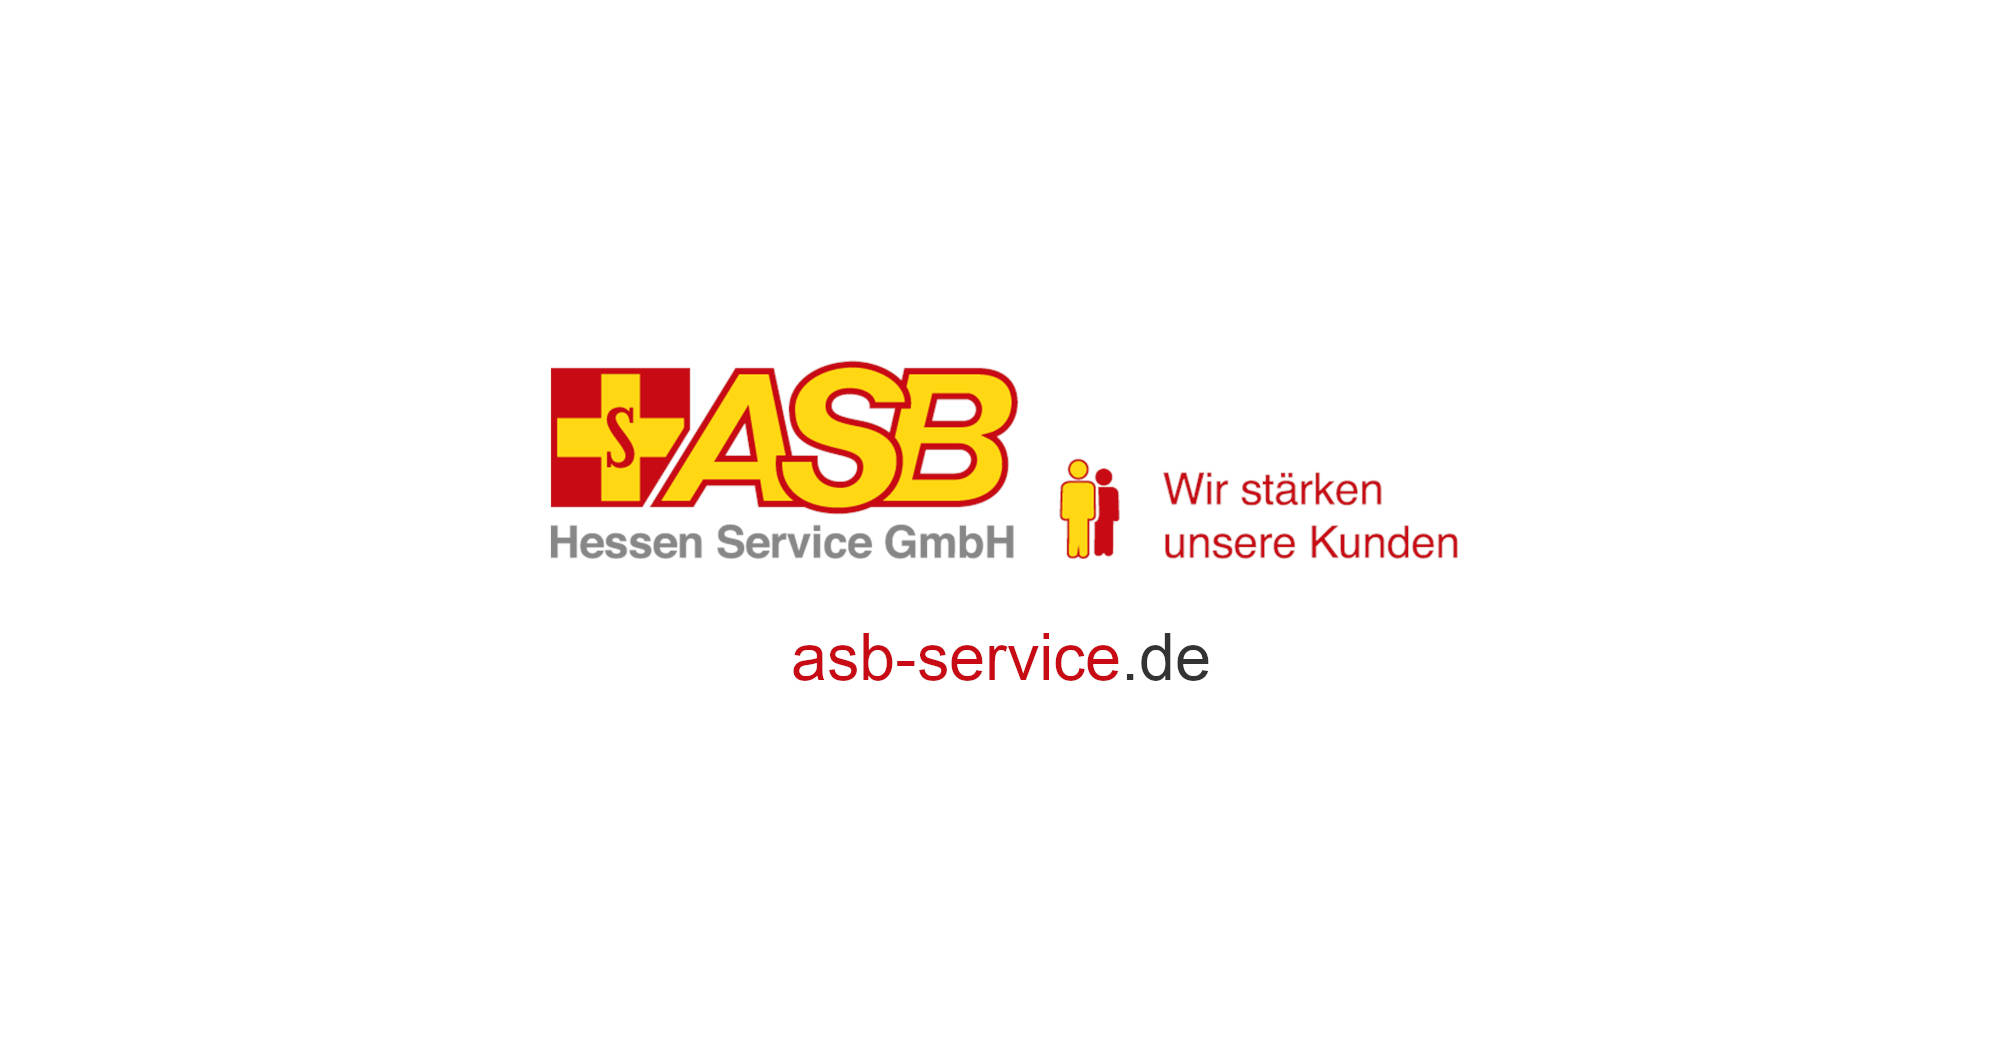 (c) Asb-service.de